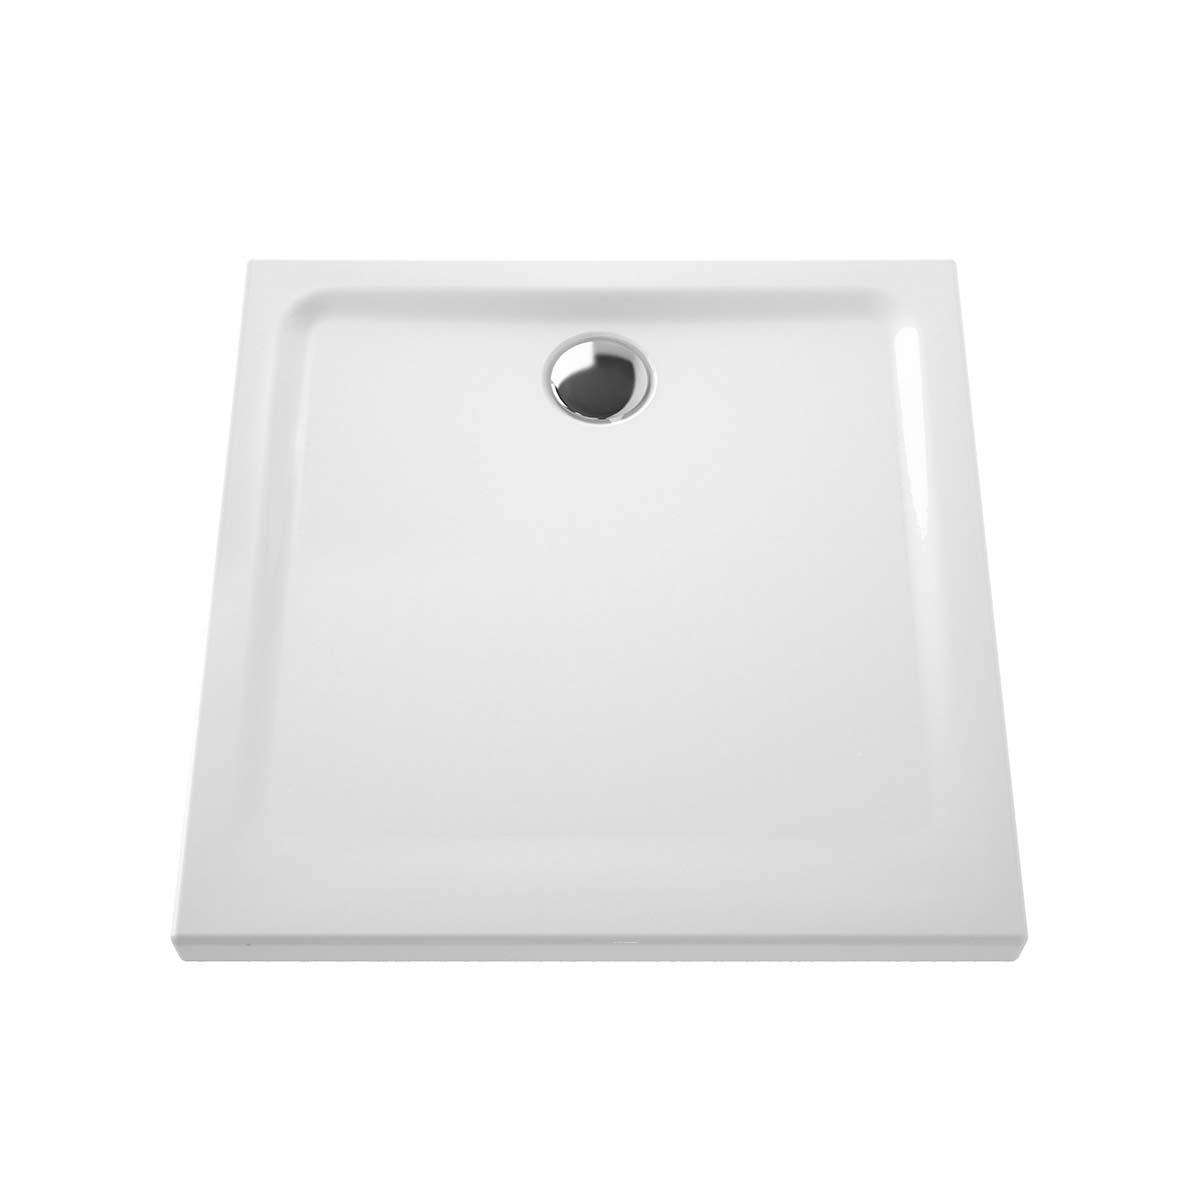 Arkitekt Square Shower Tray, 80 cm